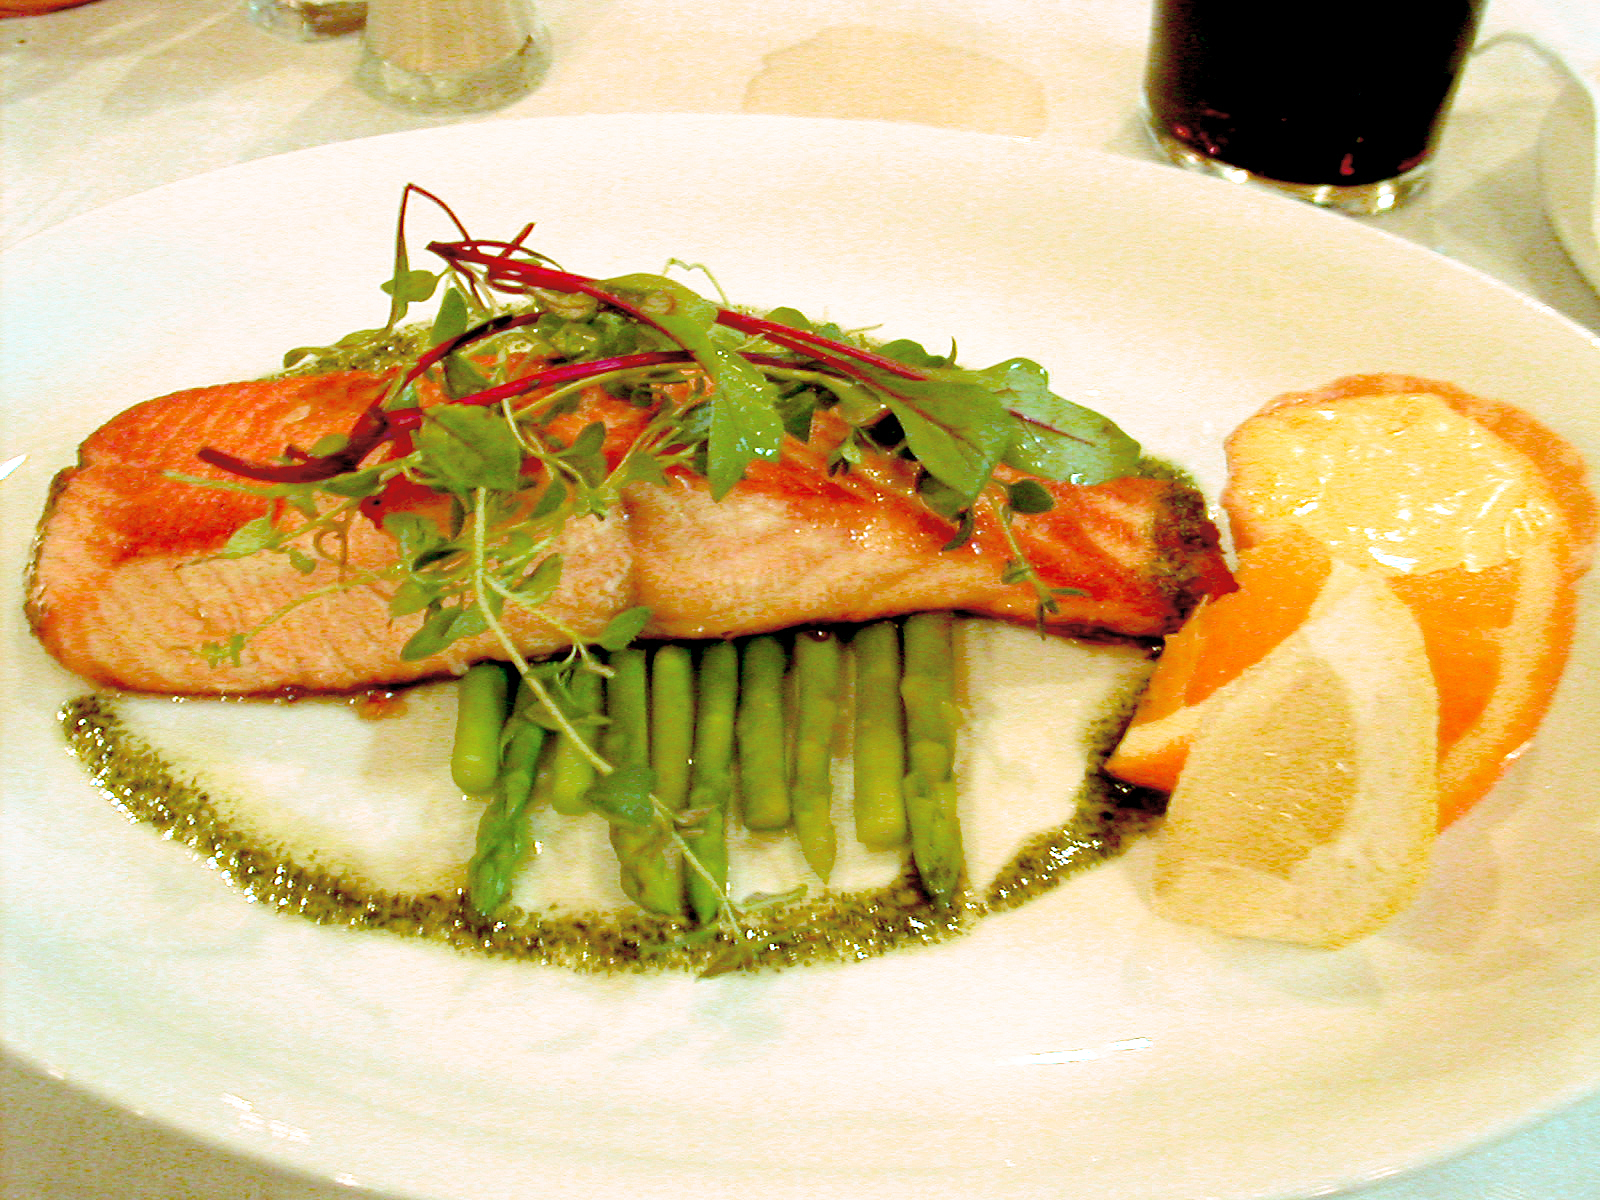 Блюда из рыбы в ресторане. Ресторанные блюда из рыбы. Семга с овощами. Блюда из рыбы ресторанная подача. Лосось блюдо ресторана.